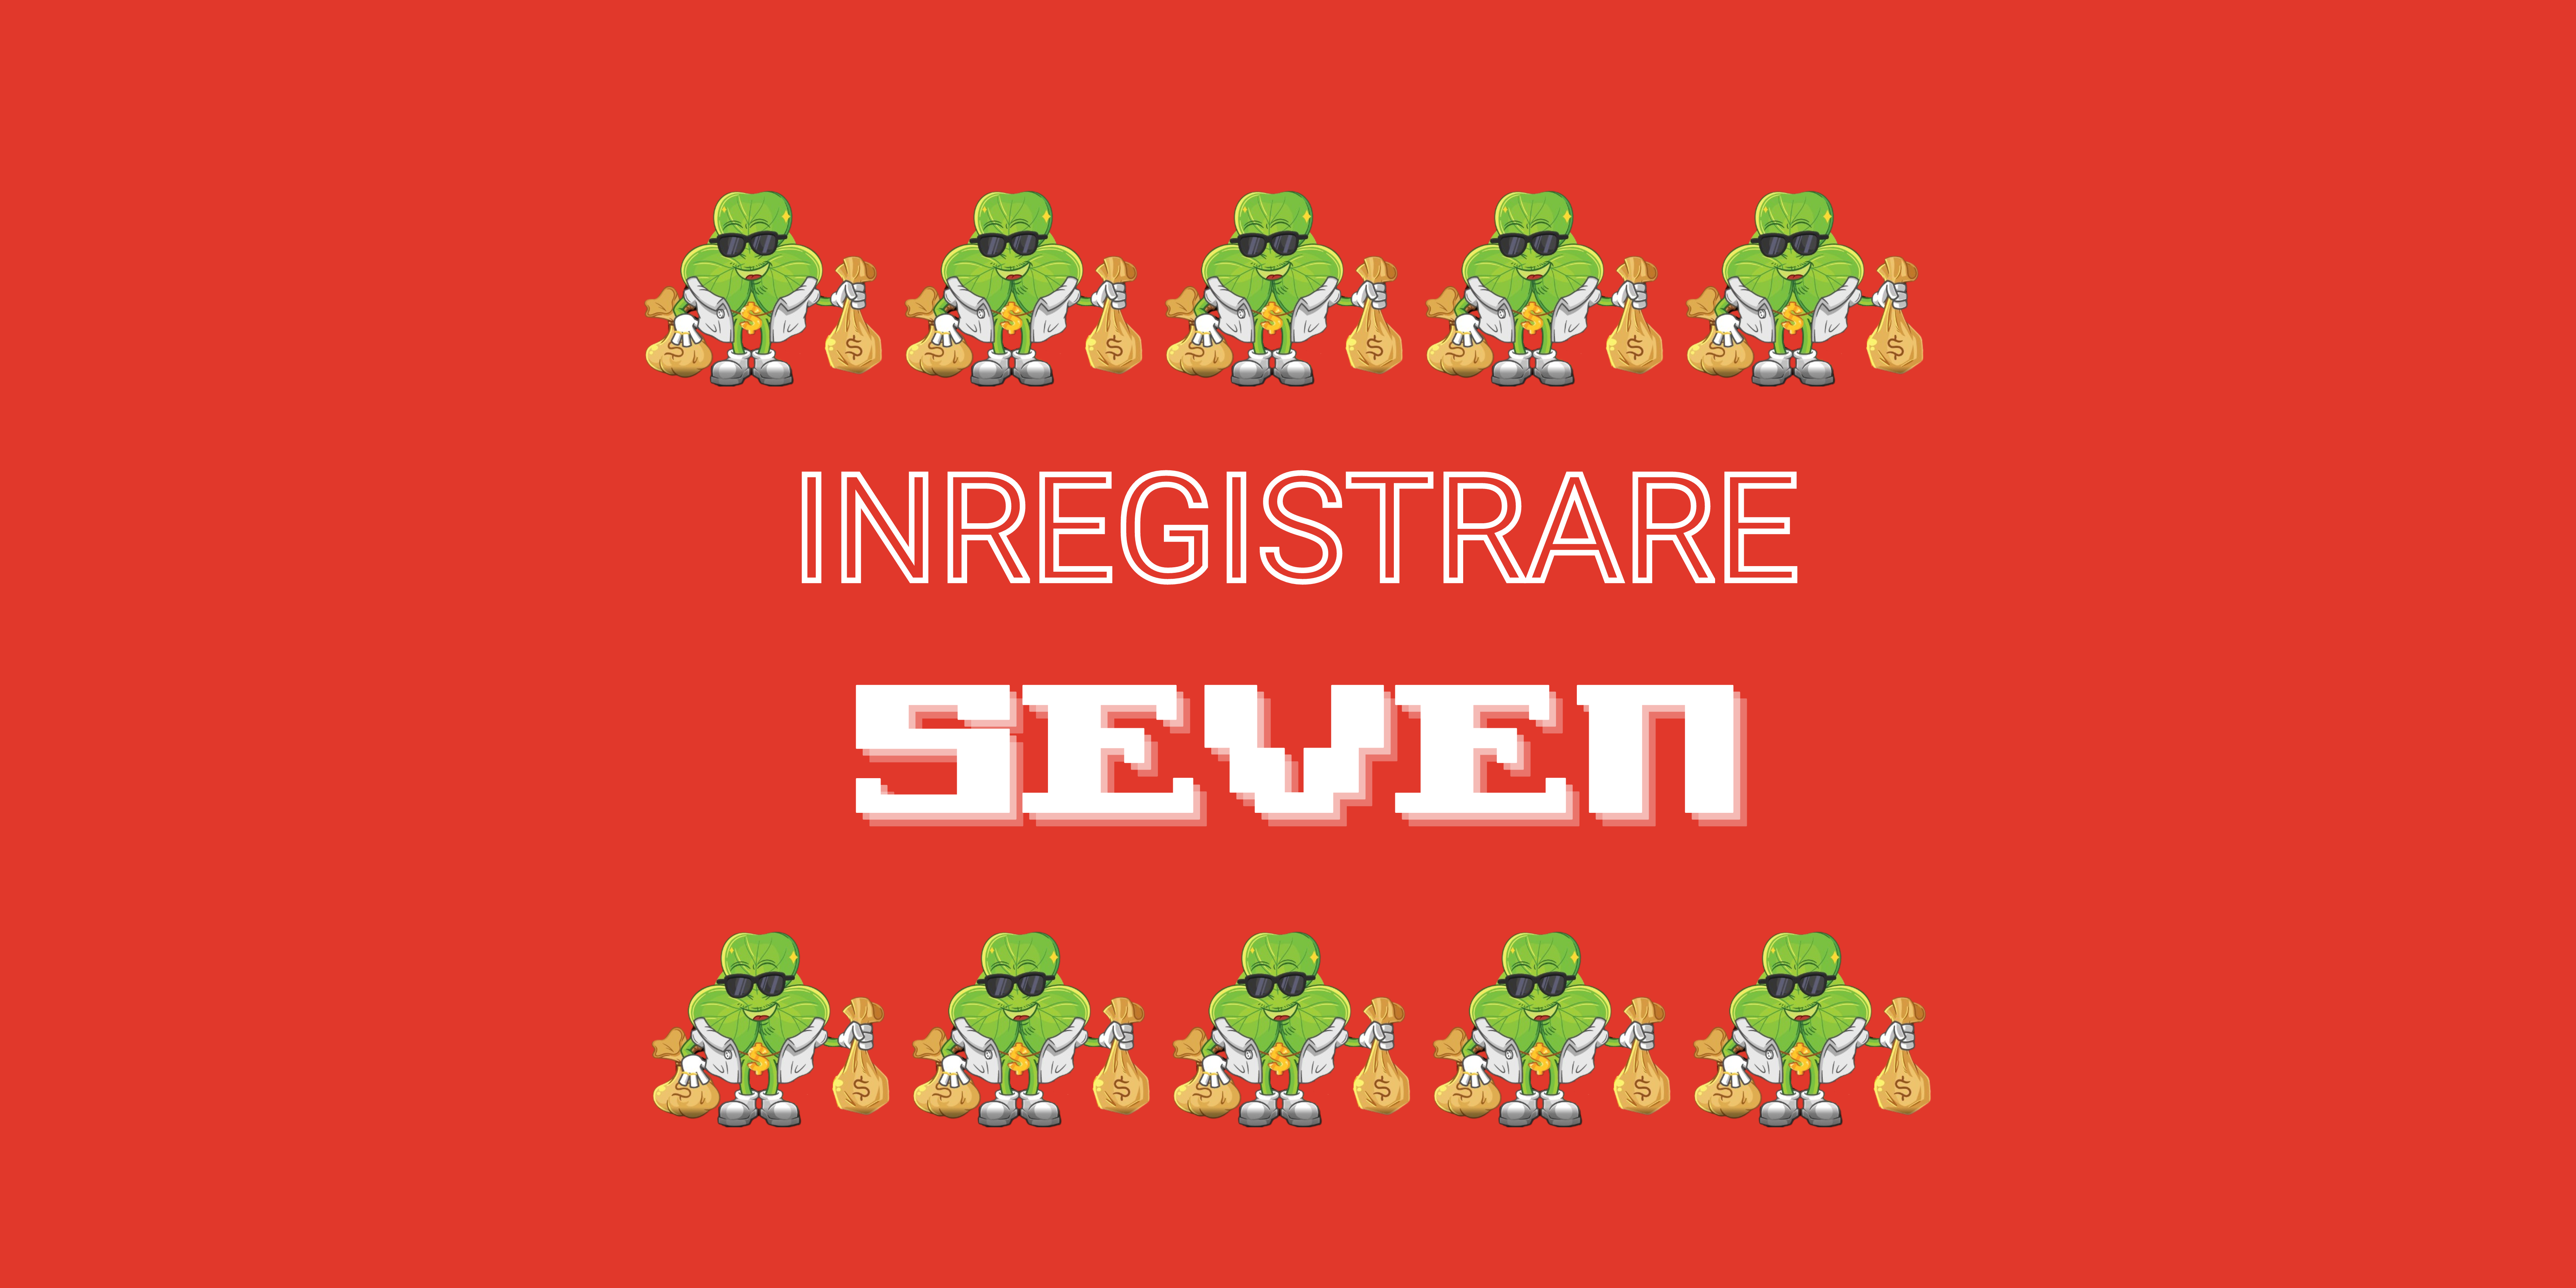 INREGISTRARE SEVEN